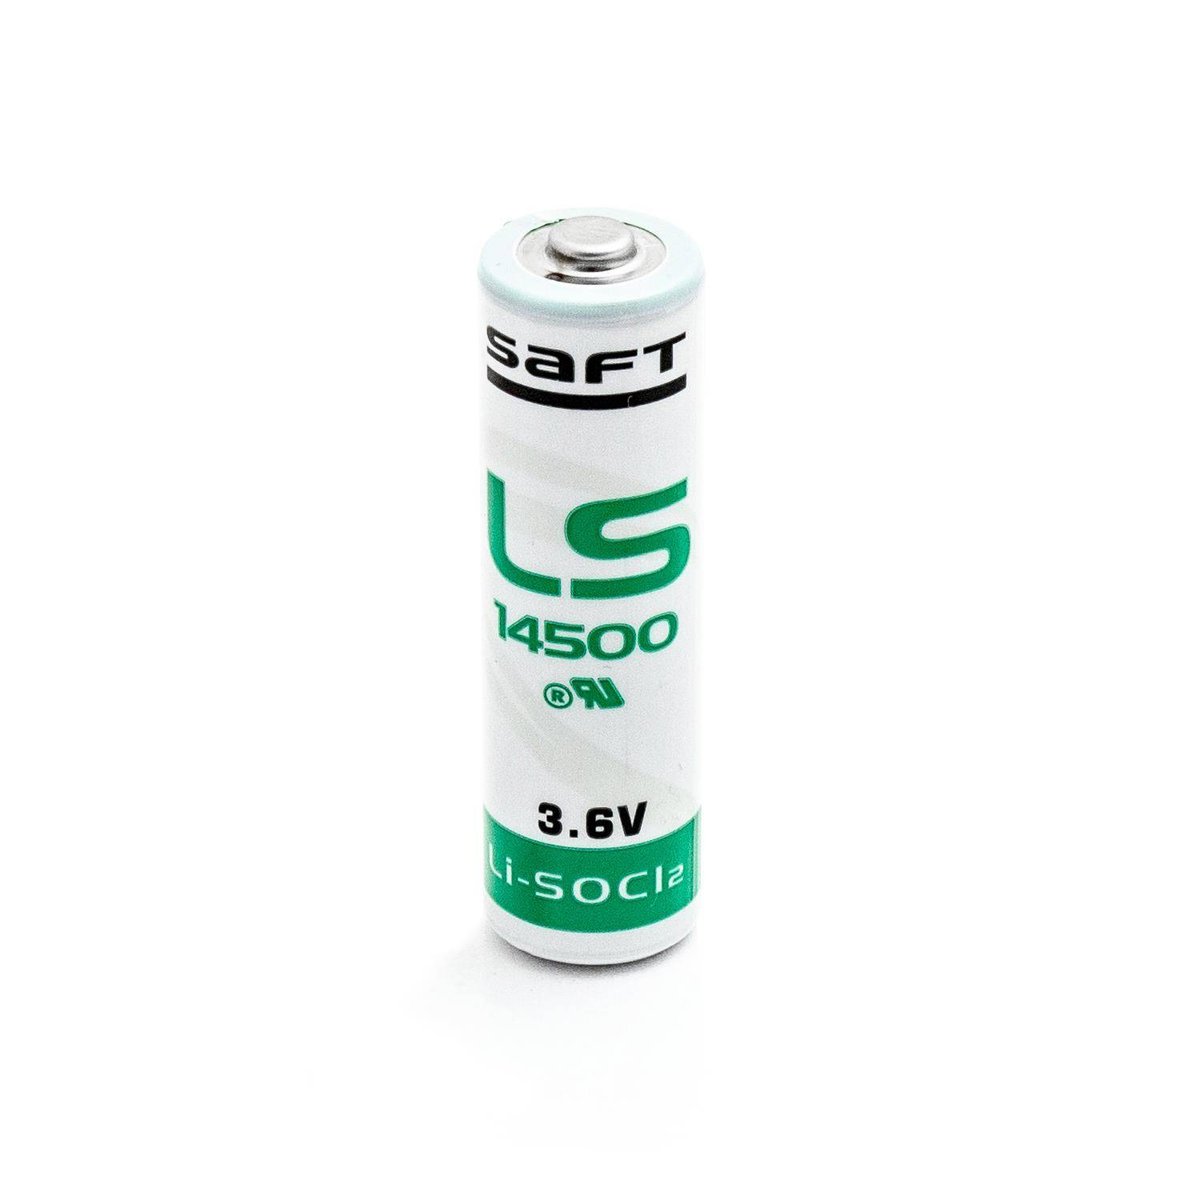 Фото - Акумулятор / батарейка Bateria Litowa Saft Ls14500, Ls 14500 3,6V 2600Mah Li-Socl2 Aa, Sl-360, Sl